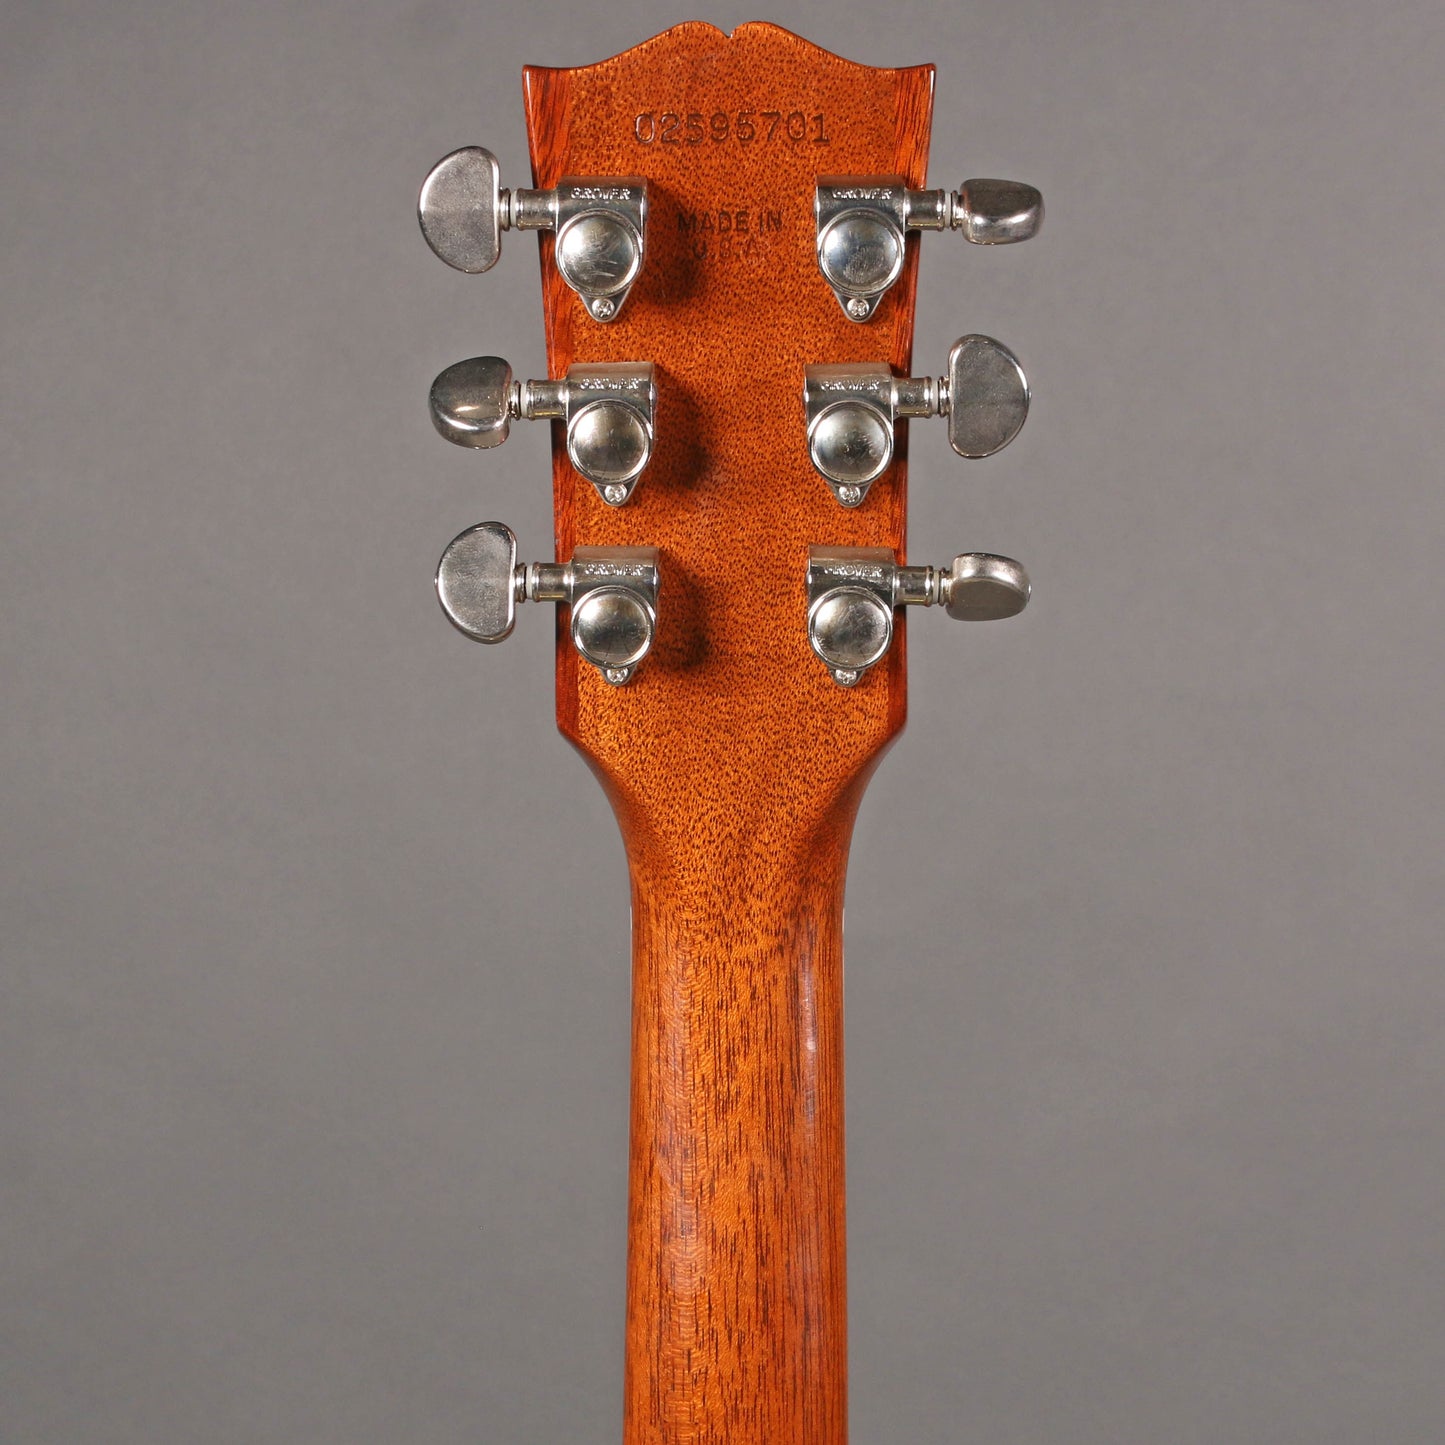 2005 Gibson ES-335